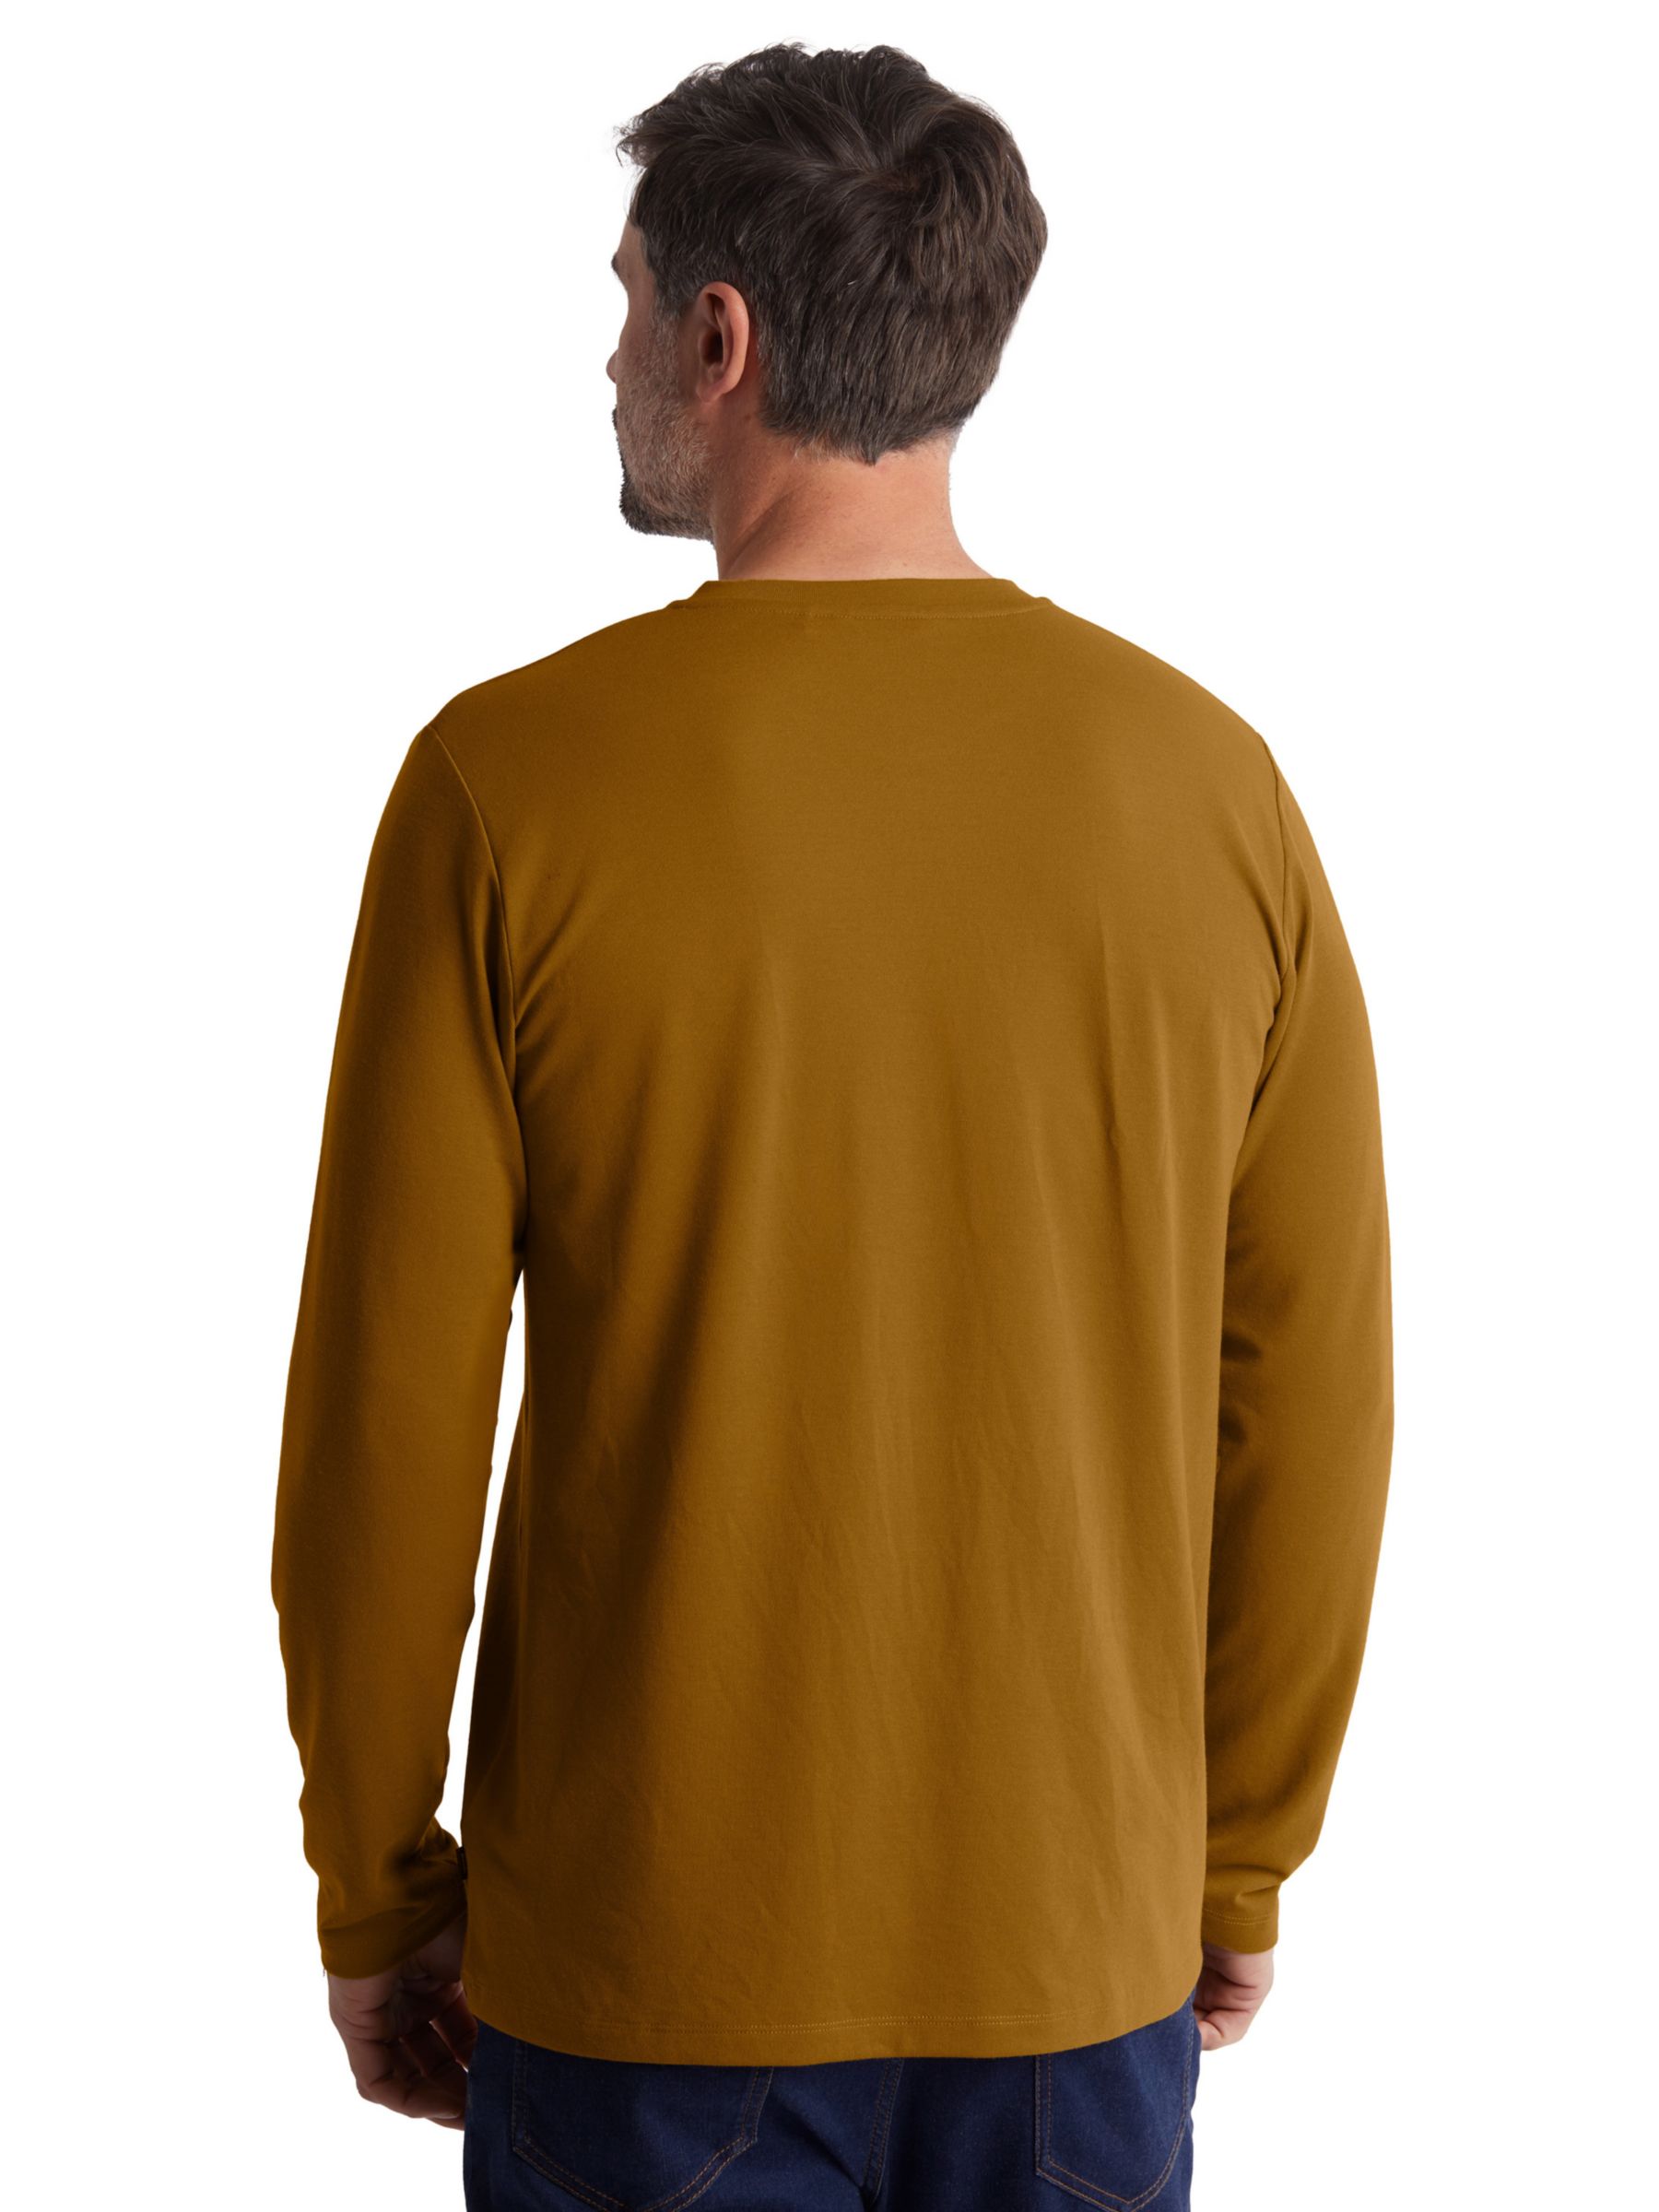 Rohan Newlyn Linen Blend Henley Long Sleeve T-Shirt, Desert Ochre, S